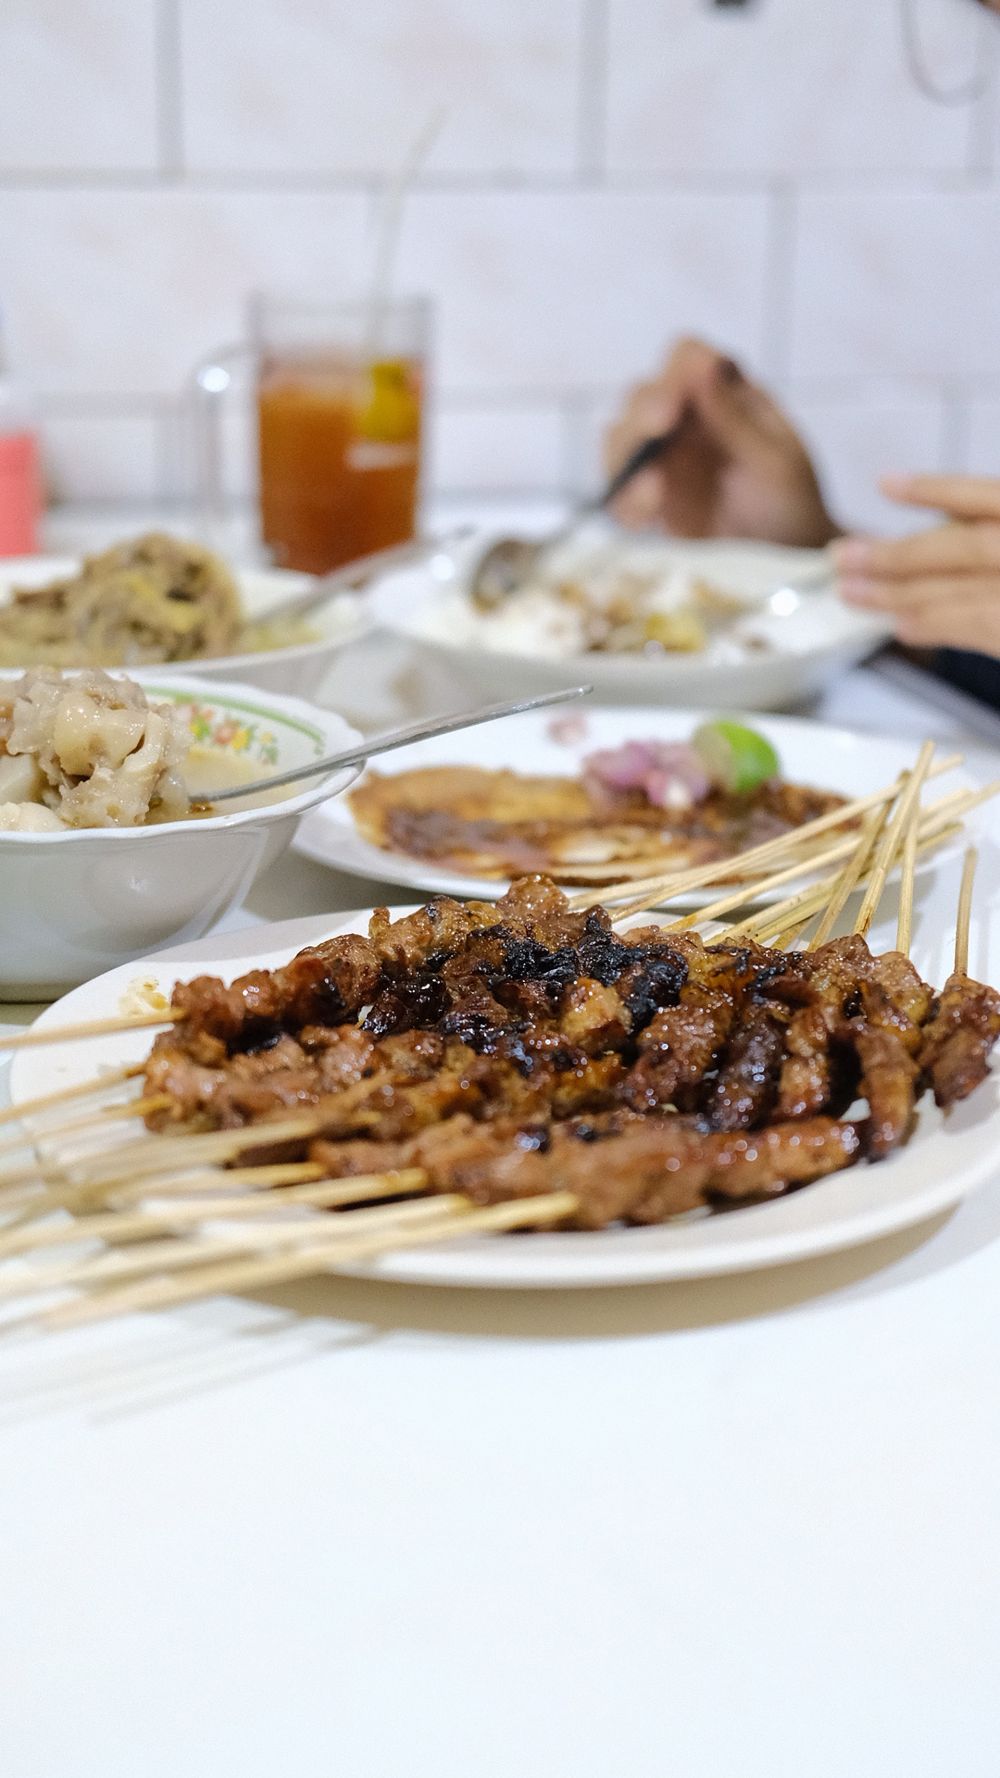 10 Makanan Indonesia Yang Mudah Ditemui Di Pinggir Jalan